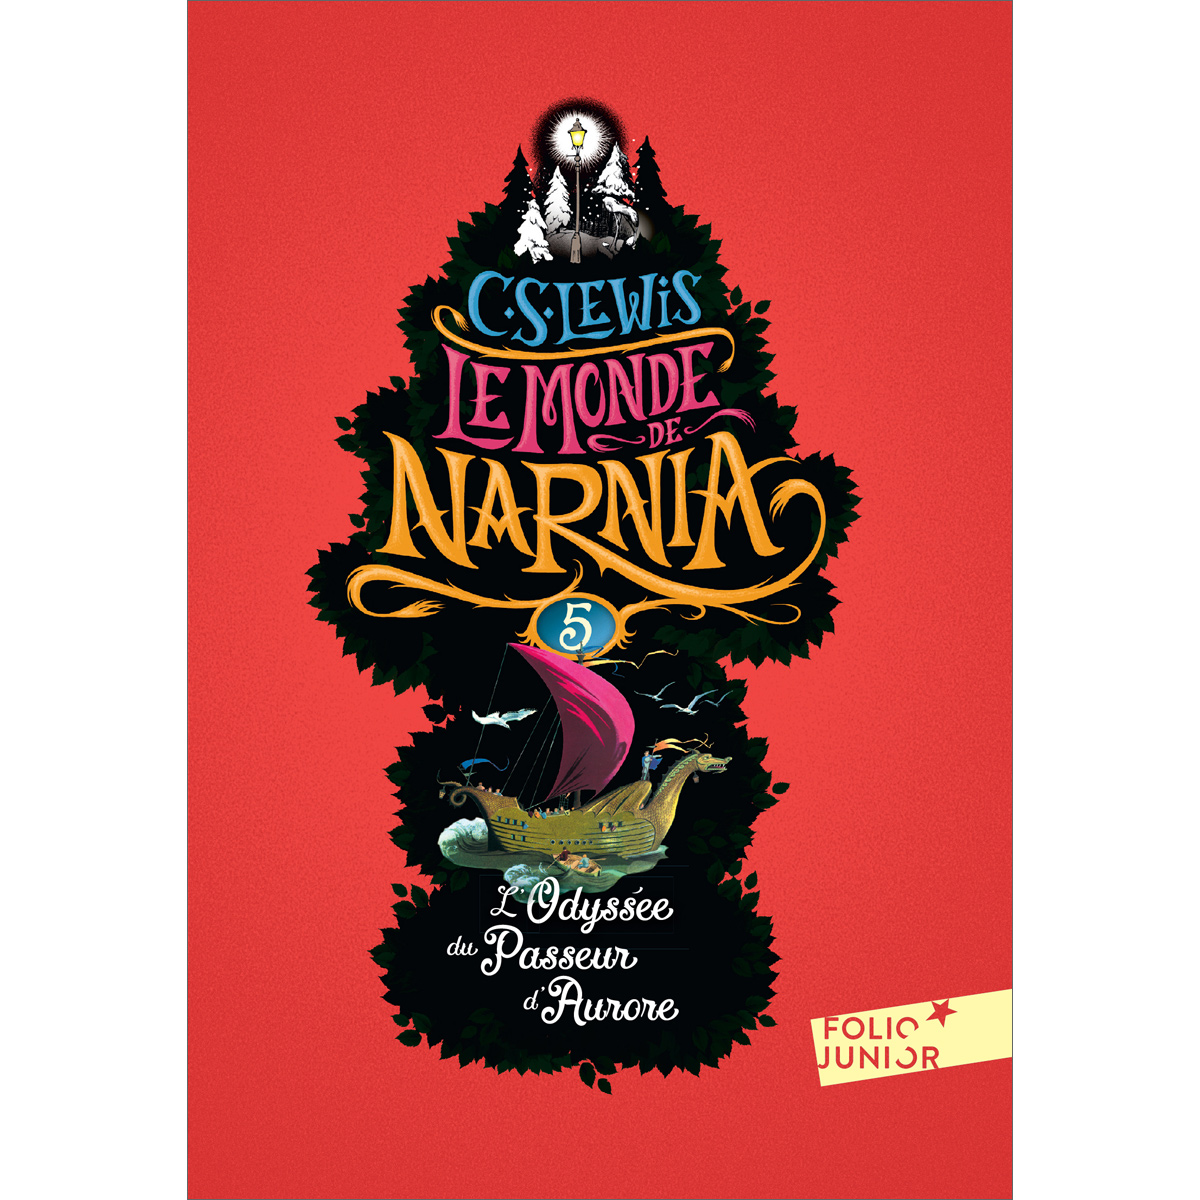 Le Monde de Narnia (5) - L'Odysse du Passeur d'Aurore